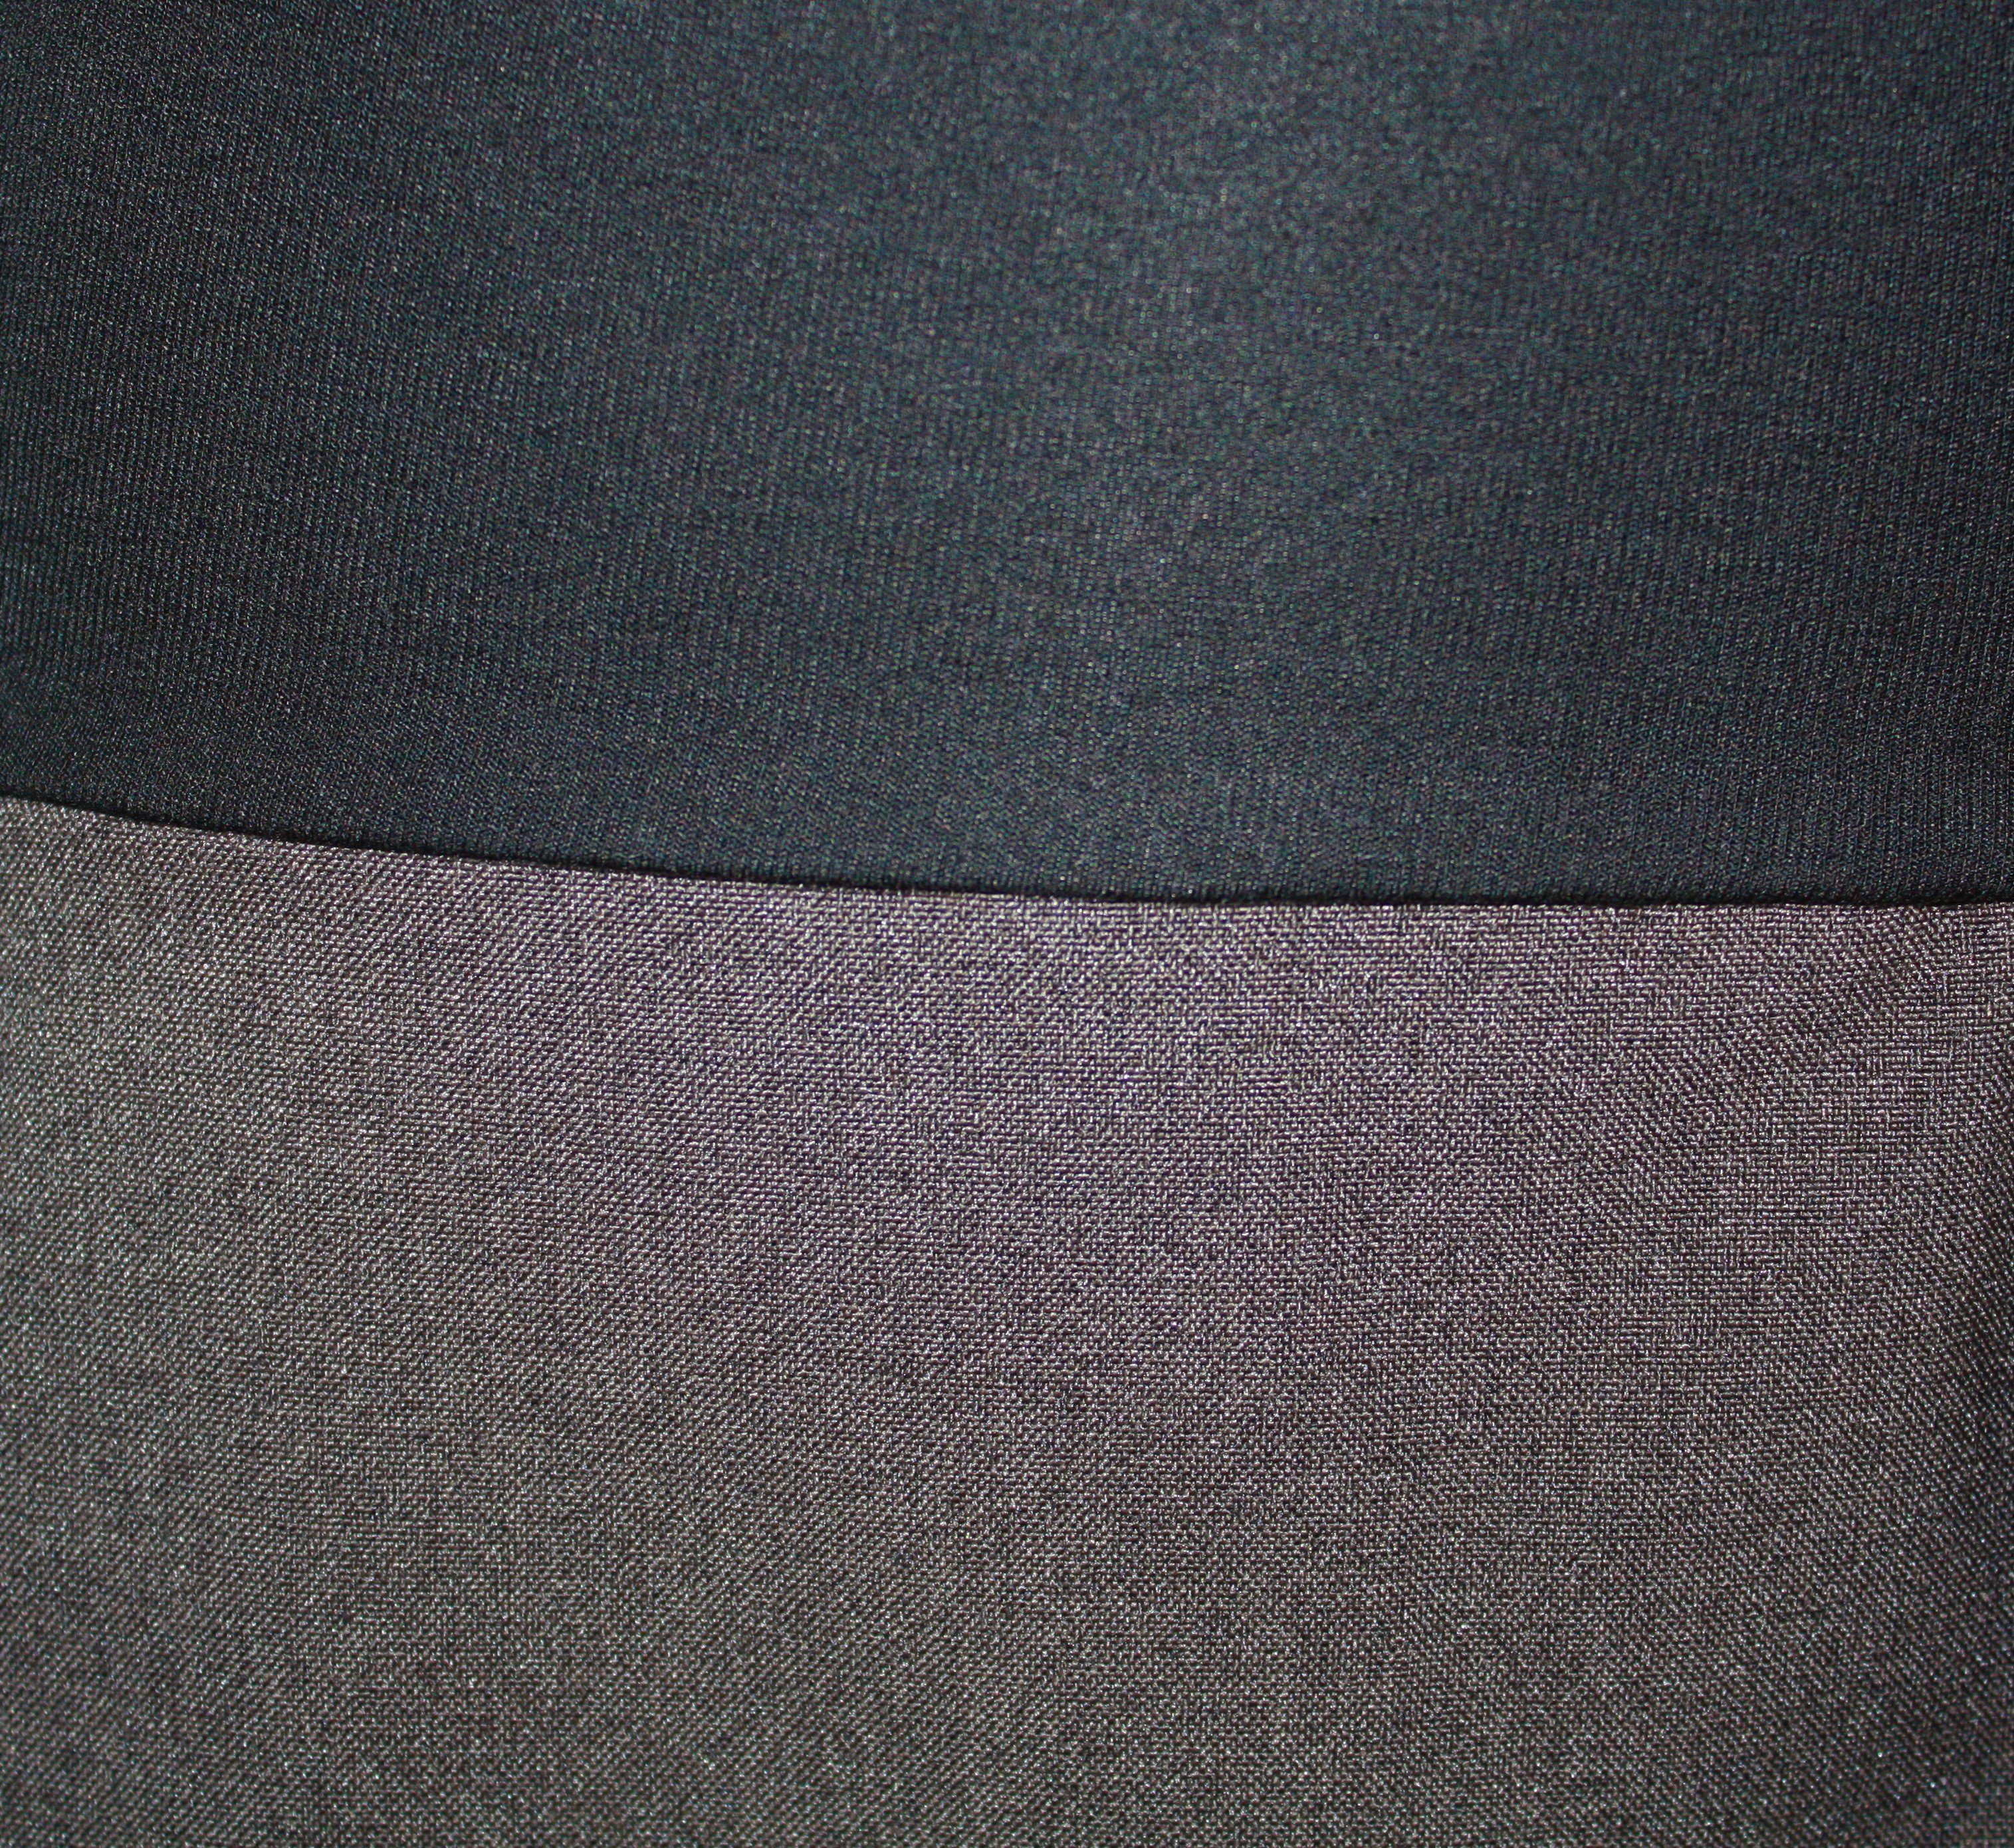 Braun Grau Schwarz Ballonrock elastischer Bund 65cm Grau dunkle Ecru meliert design